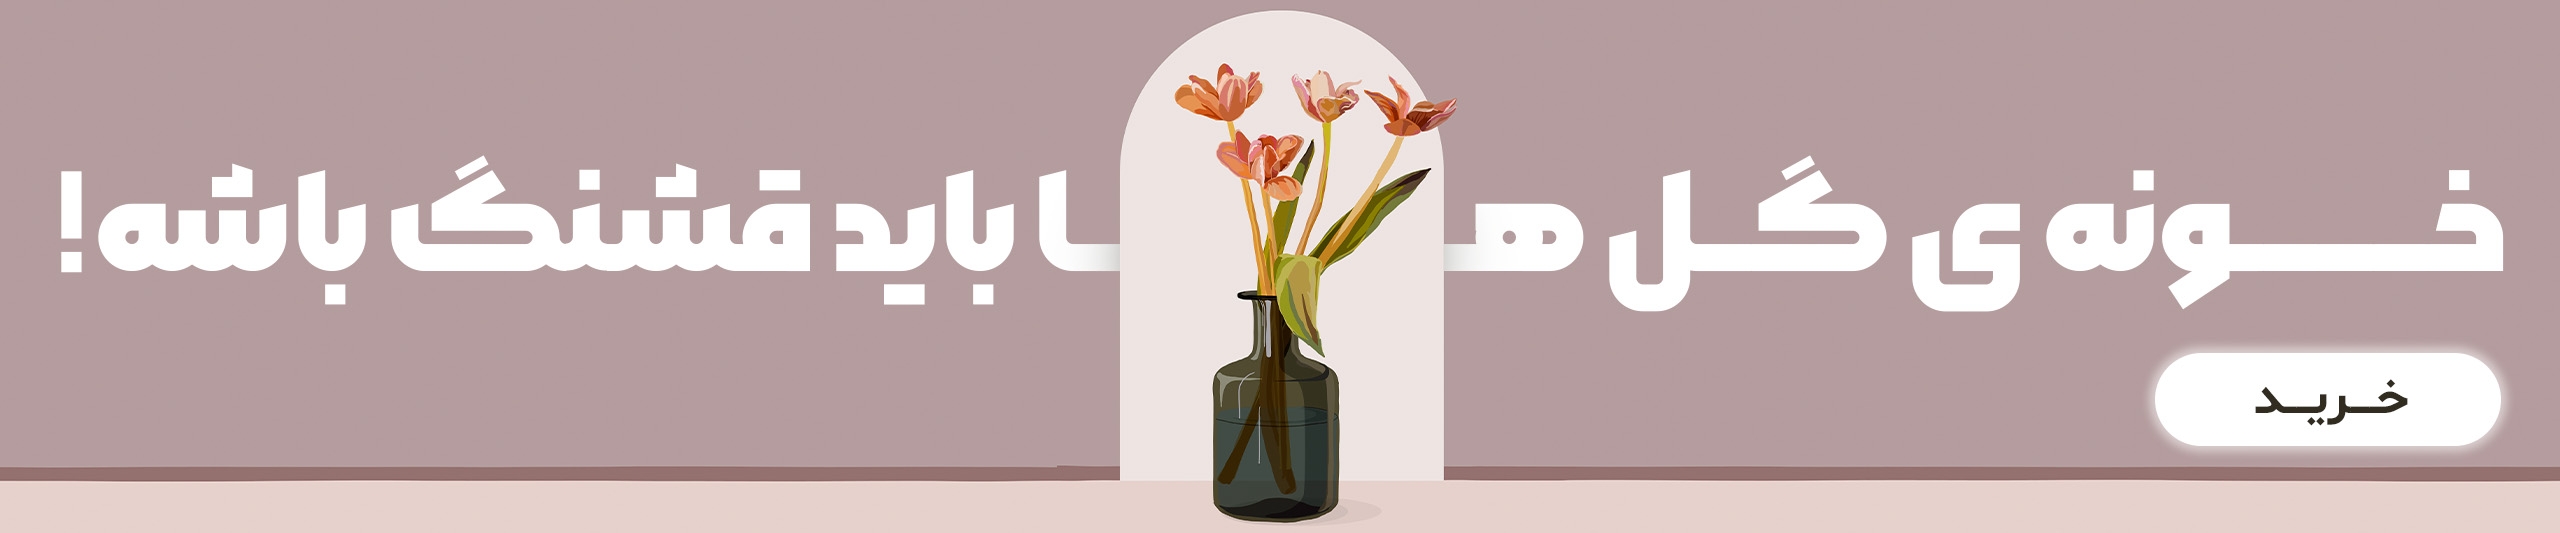 خرید انواع گلدان شیشه ای | دکوکاف